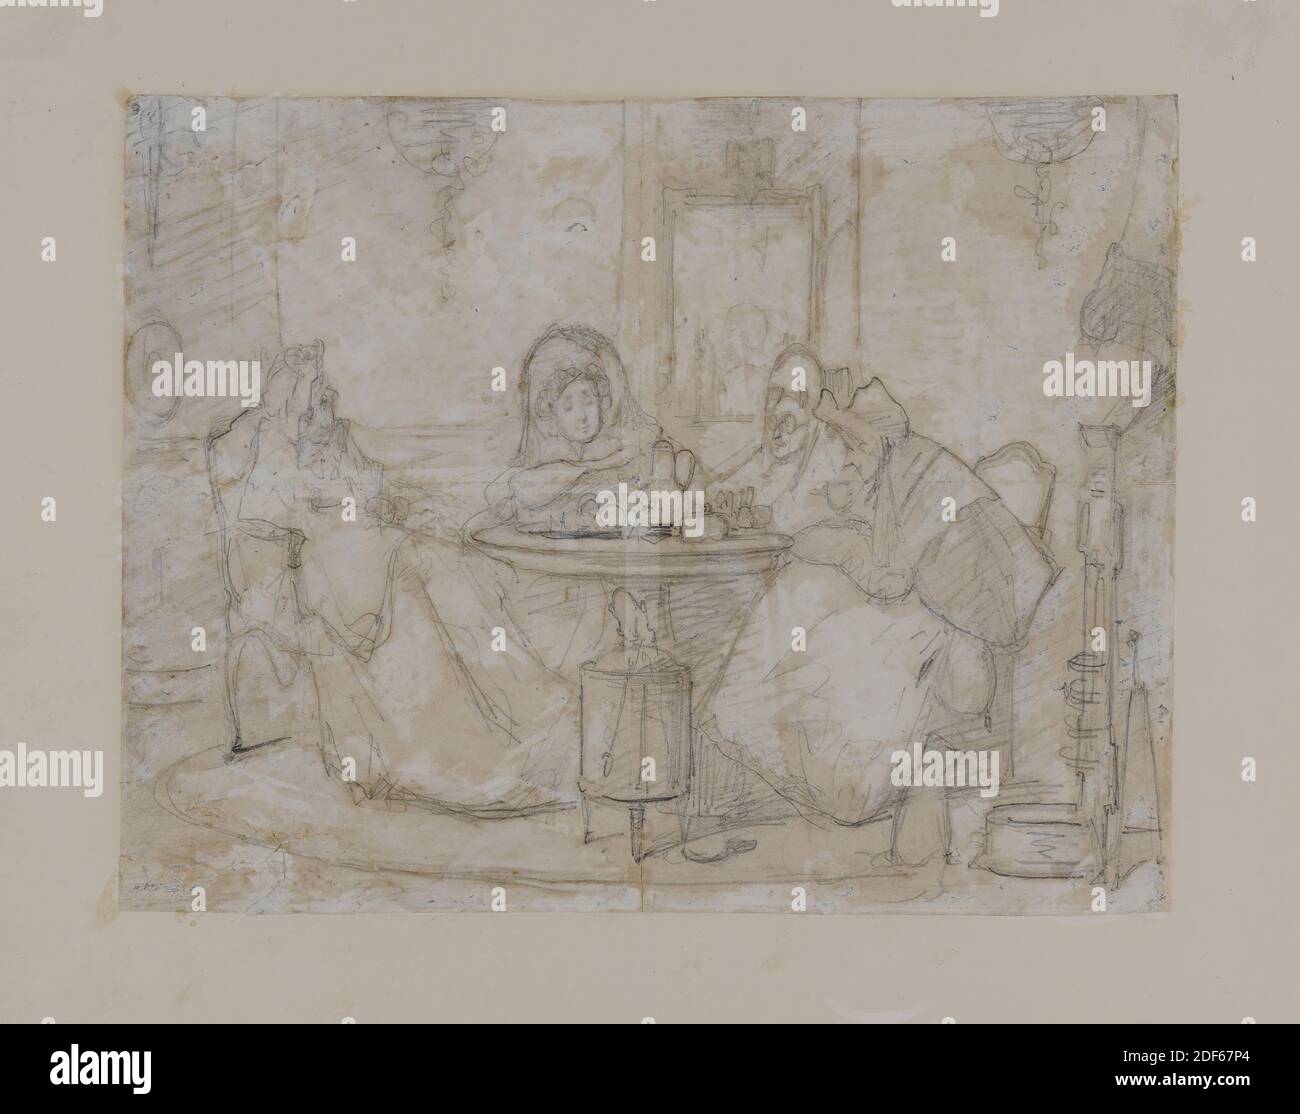 Dessin, Alexander Hugo Bakker Korff, ca.1865, gouache, crayon, papier, signé, porteur: 20.7 x 26,7 cm (207 x 267 mm), lumière du jour: 21.5 x 27,5 cm (215 x 275 mm), avec passe-partie: 30 x 42,5 cm (300 x 425 mm), chat, chaise, lecture, femme, boisson, intérieur, table, dessin avec crayon et gouache blanc, représentant quatre dames à la table basse. Devant un mur avec de larges panneaux, contre lequel est suspendu un miroir Louis XVI, quatre dames sont assis derrière une table ronde avec des ustensiles de café. À l'extrême gauche, une vieille dame tourna les trois quarts vers la droite, portant une casquette en dentelle et une grande robe. Au centre, vue de Banque D'Images